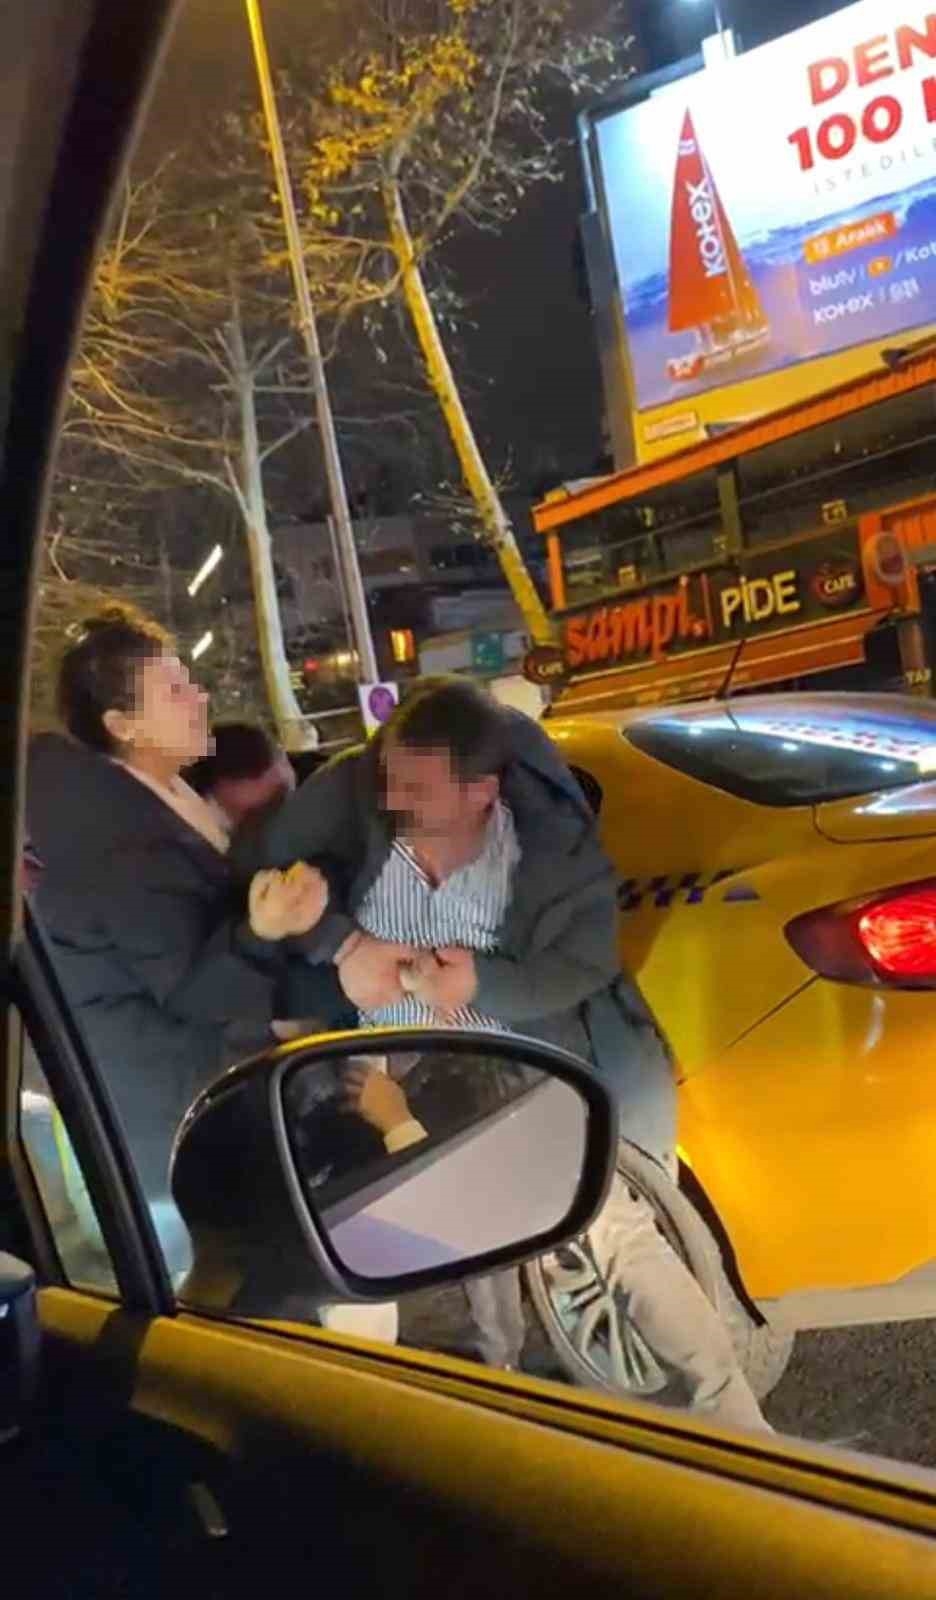 İstanbul’da taksici ile müşteri arasında “beni almadın” kavgası kamerada: Trafikte ortalık birbirine girdi
